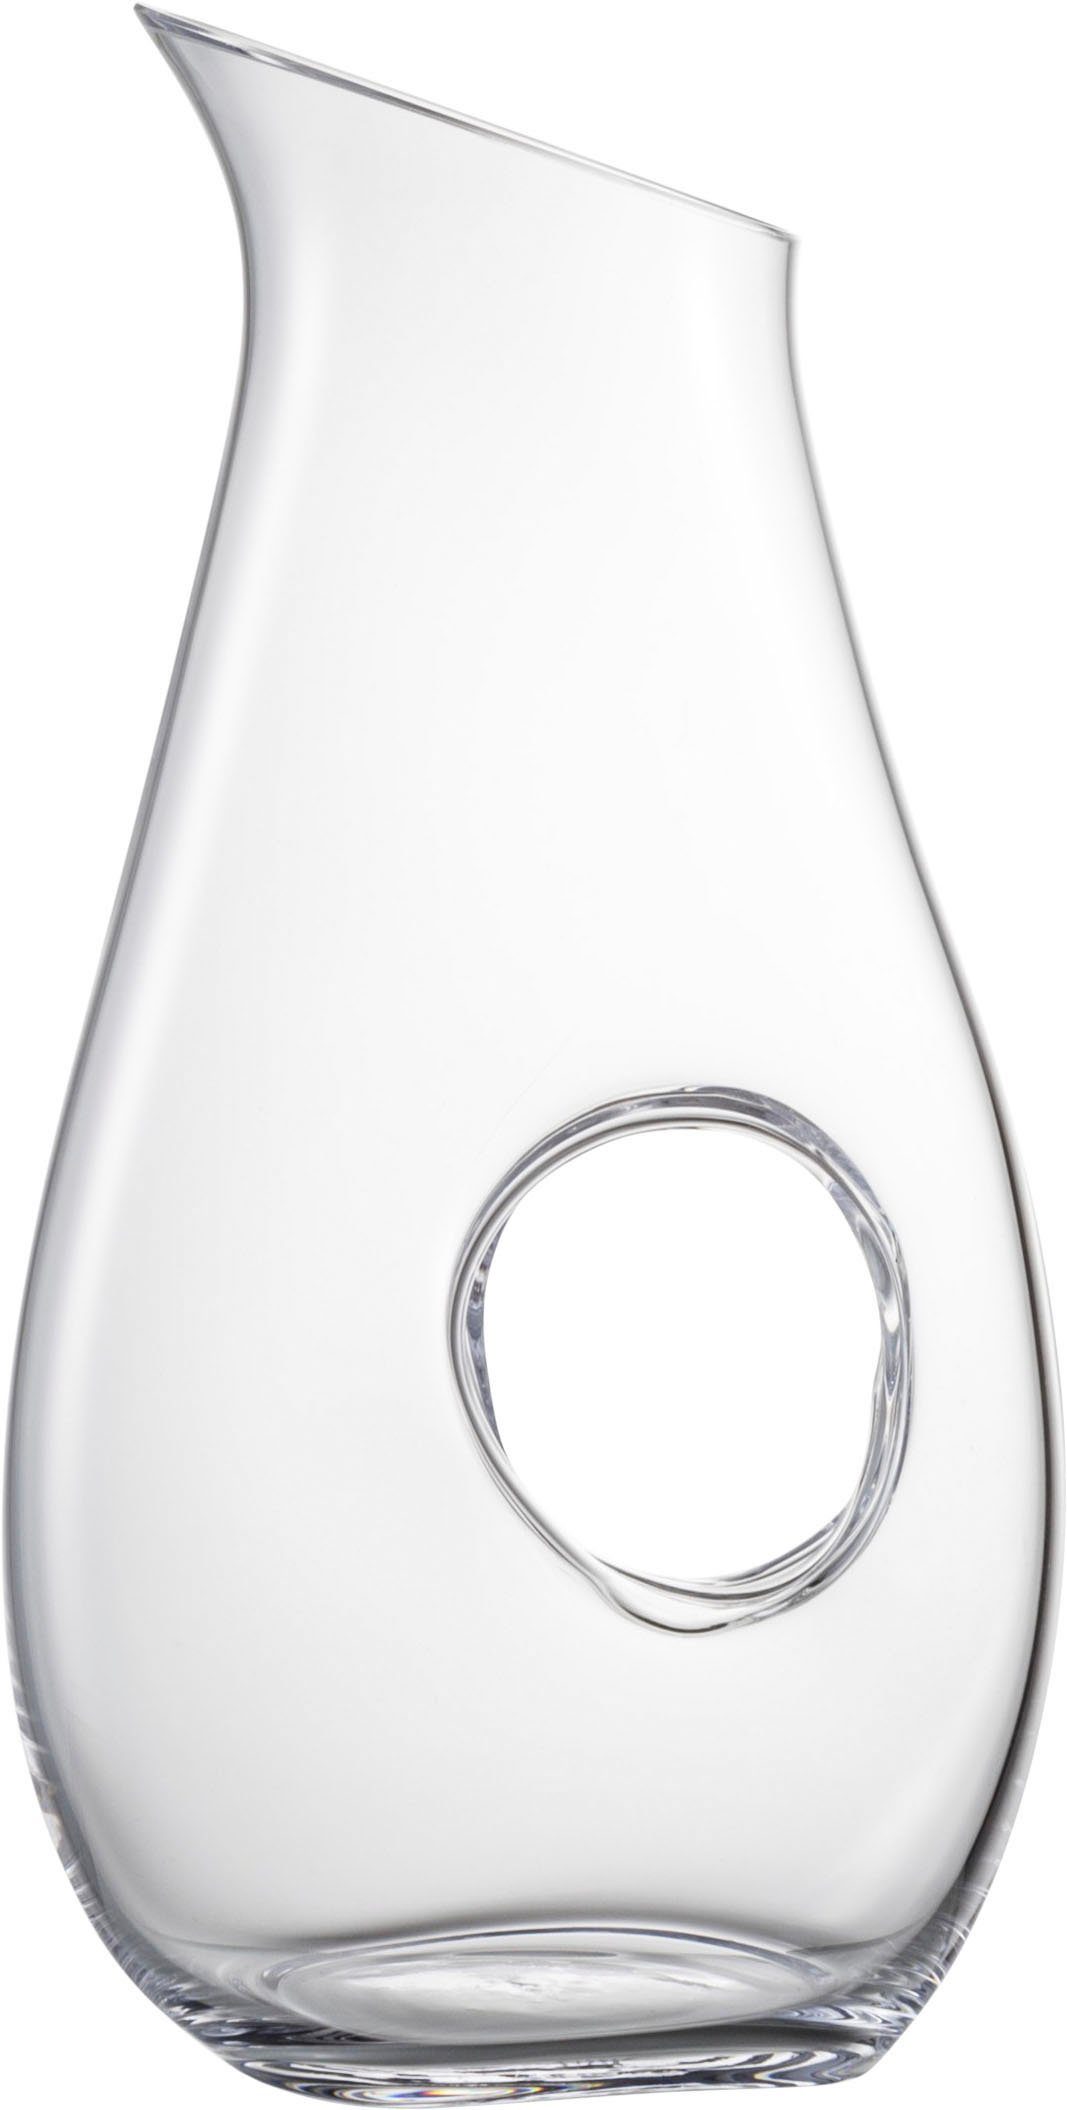 NO Kristallglas, ND, mit Durchgriff, EFFEKT DROP 706/1.5 Wasserkrug 1 tropffreies Liter für Eisch Ausgießen,